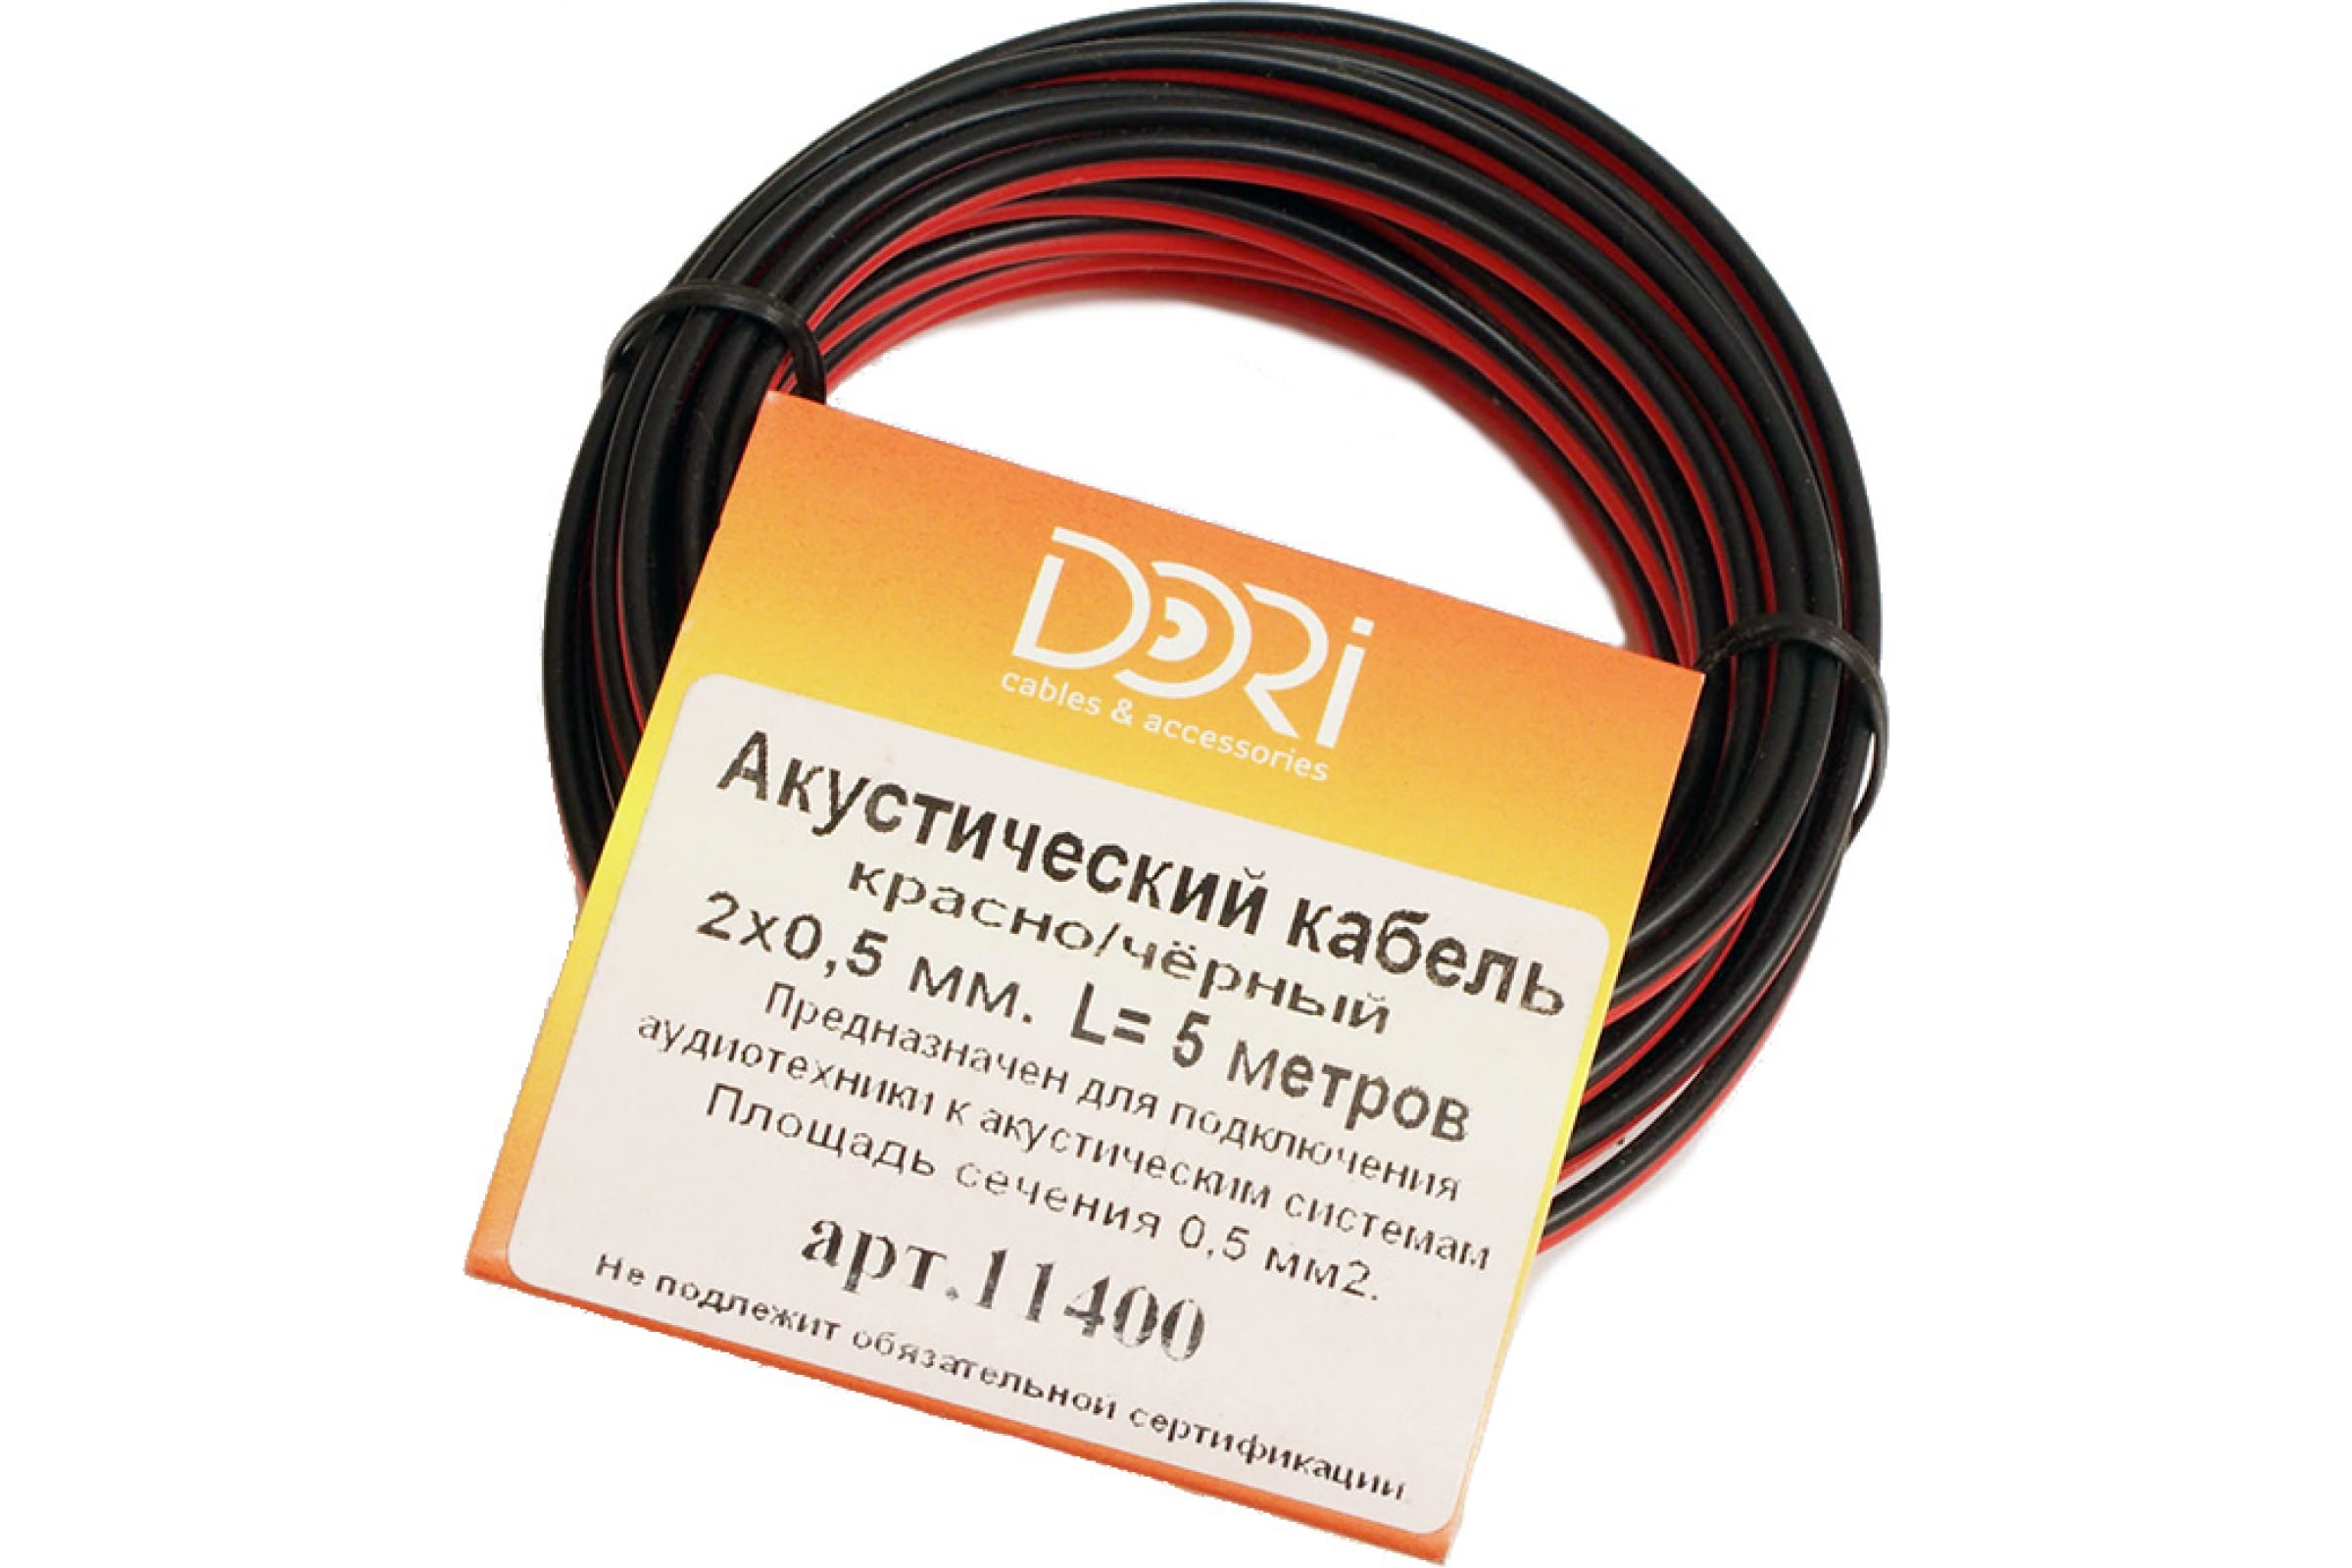 фото Dori кабель акустический 2x0,5 чёрно-красный 5м, шт 11400